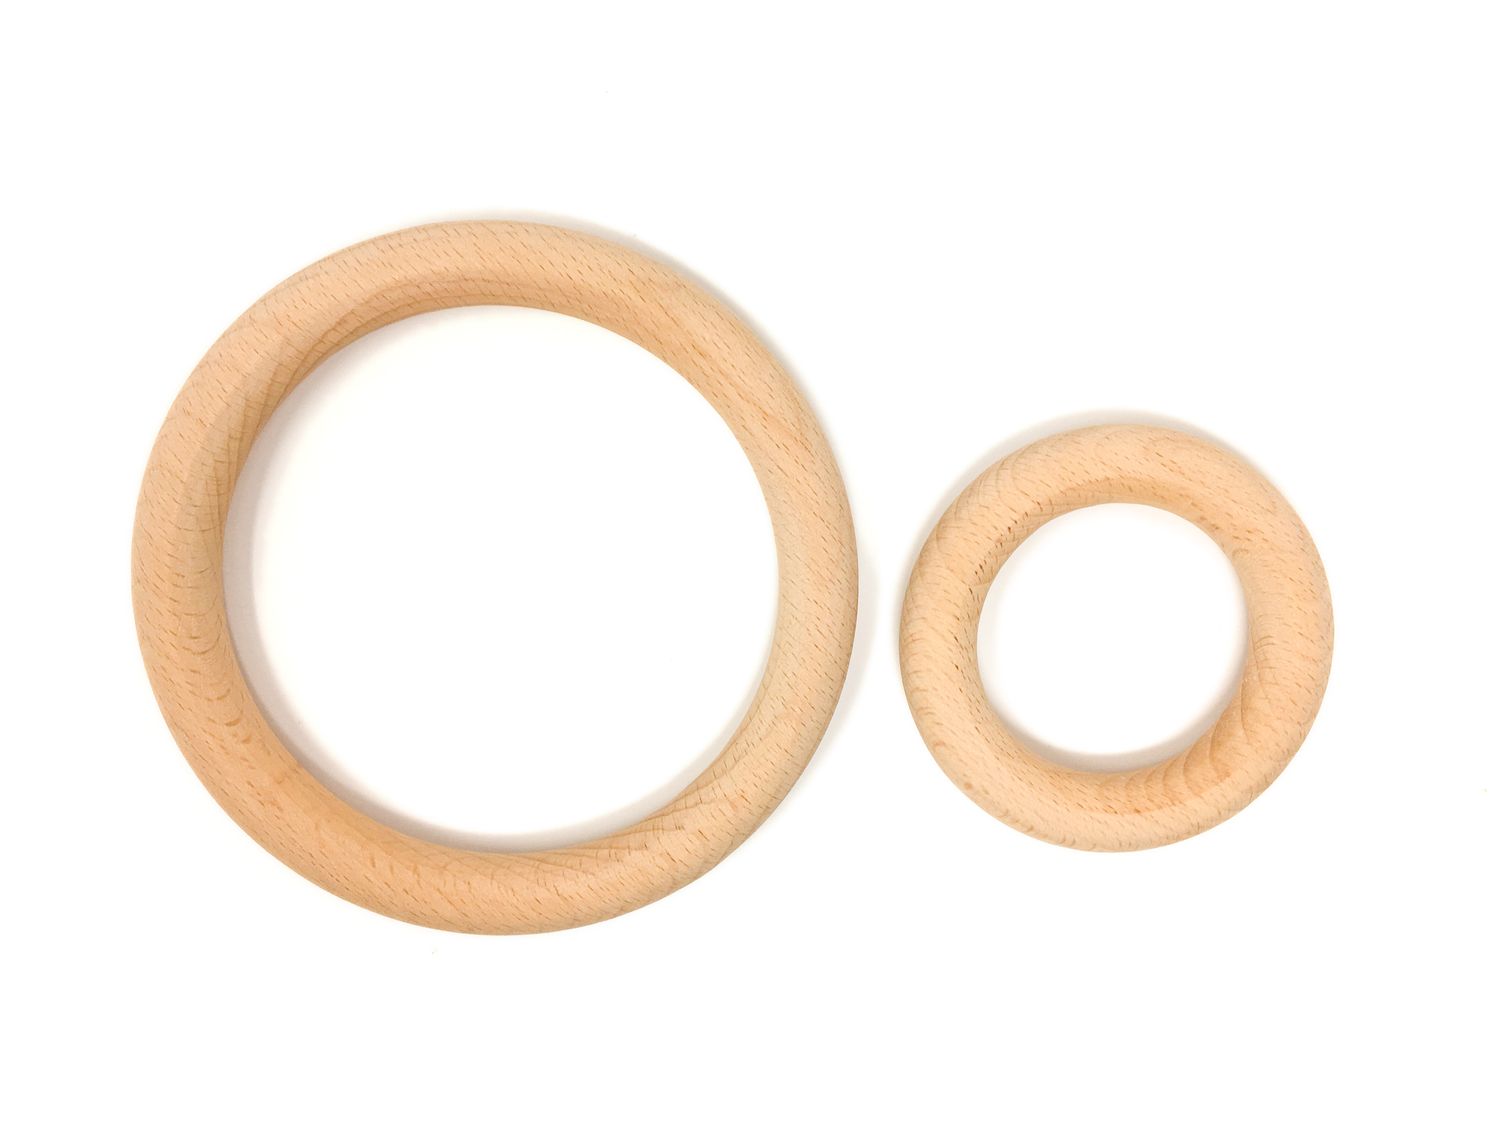 Grapat Holzspielzeug 3 Ringe, klein